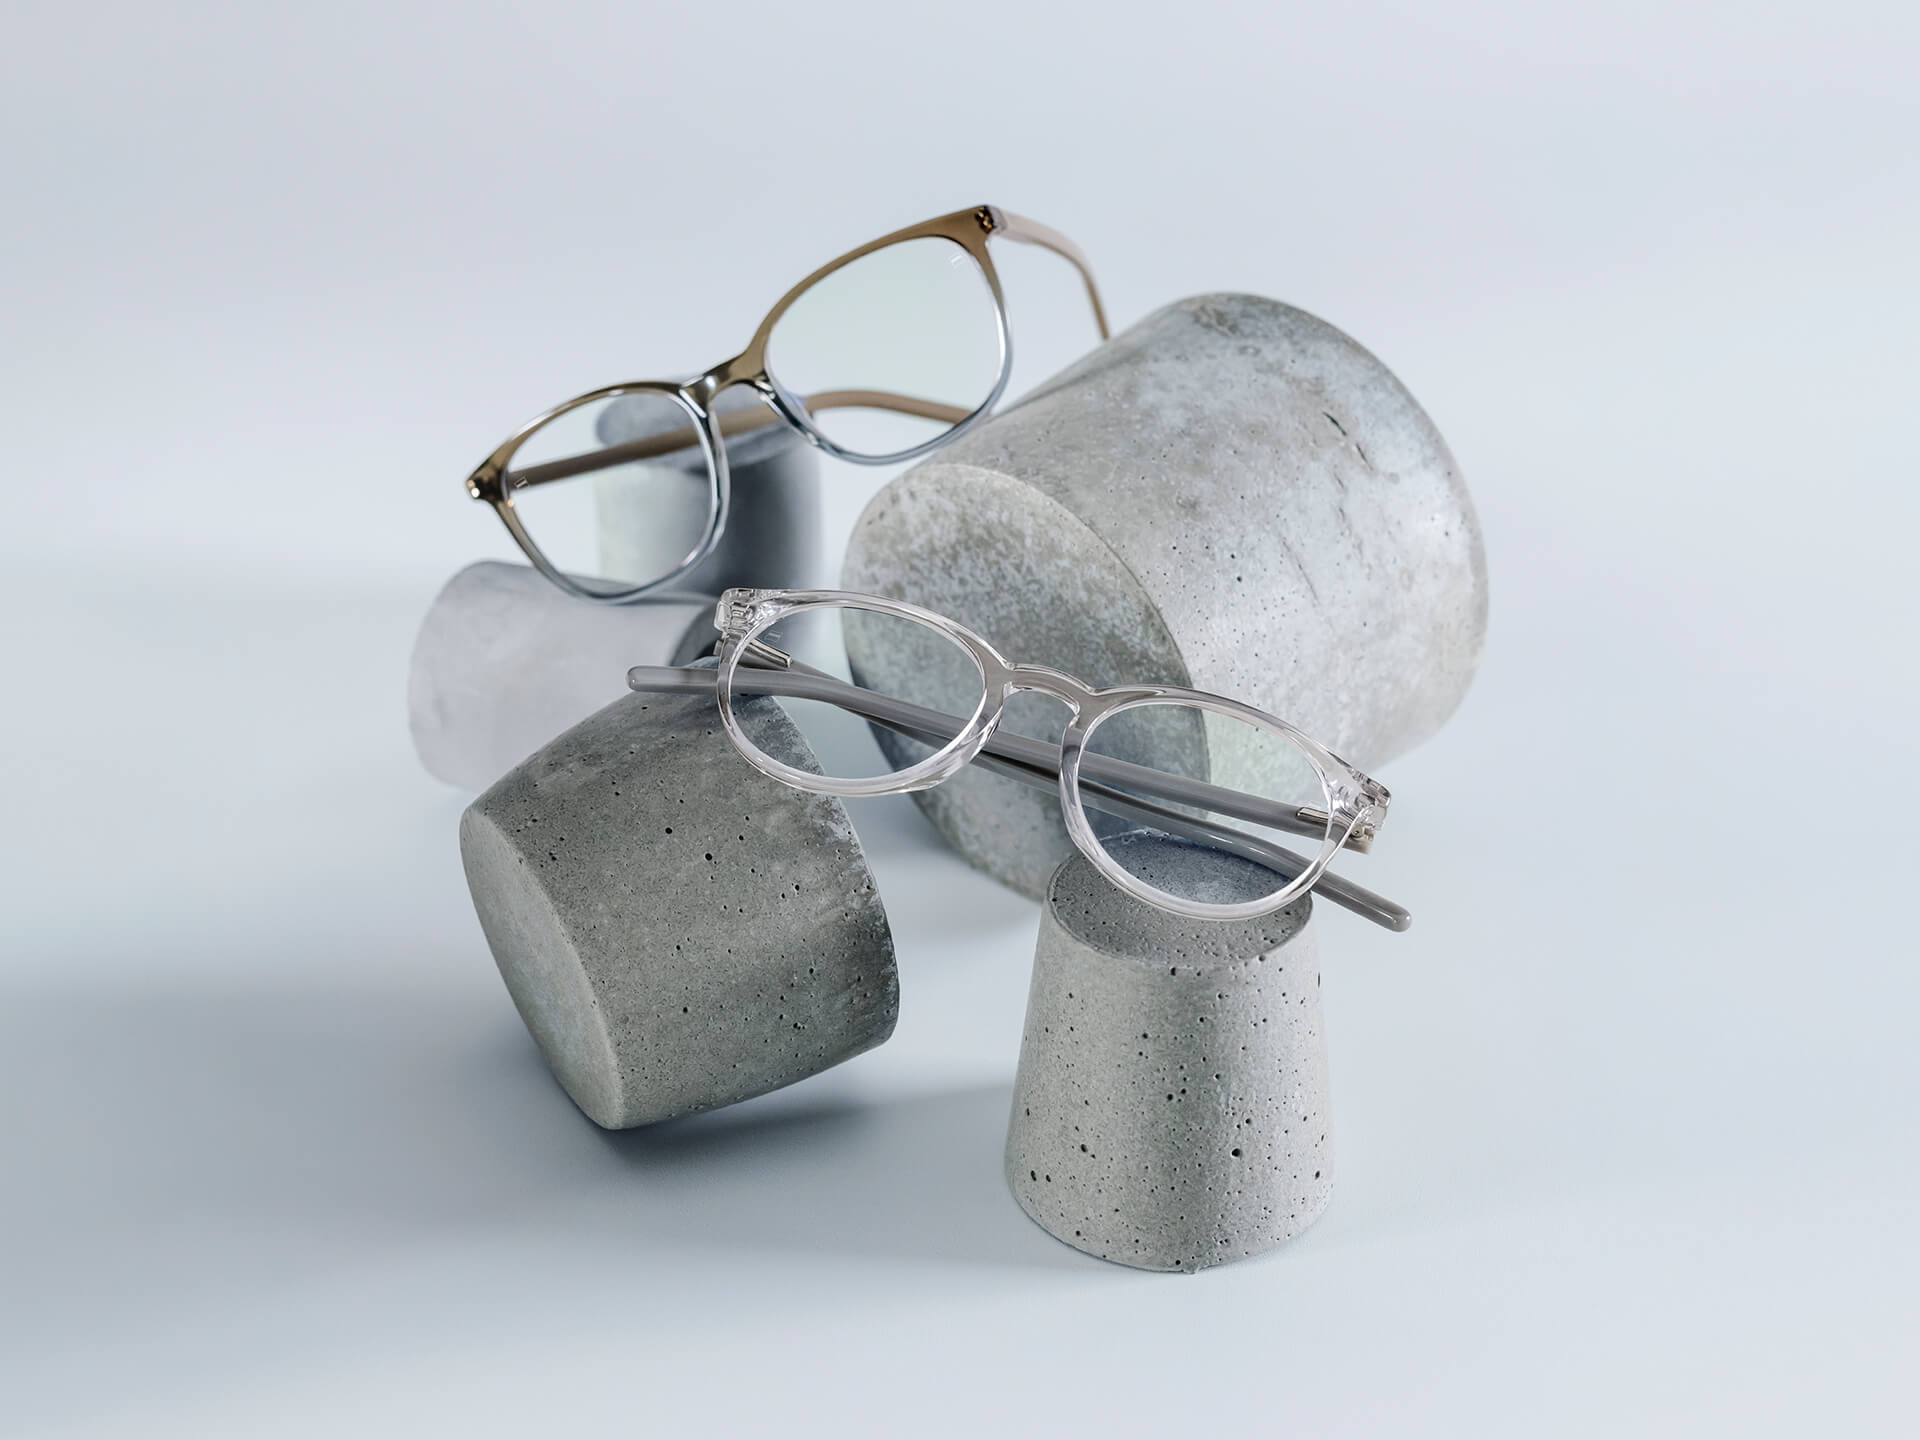 Brillen mit ZEISS Brillengläsern mit DuraVision® Chrome-Beschichtung liegen auf unterschiedlich großen Steinsockeln.